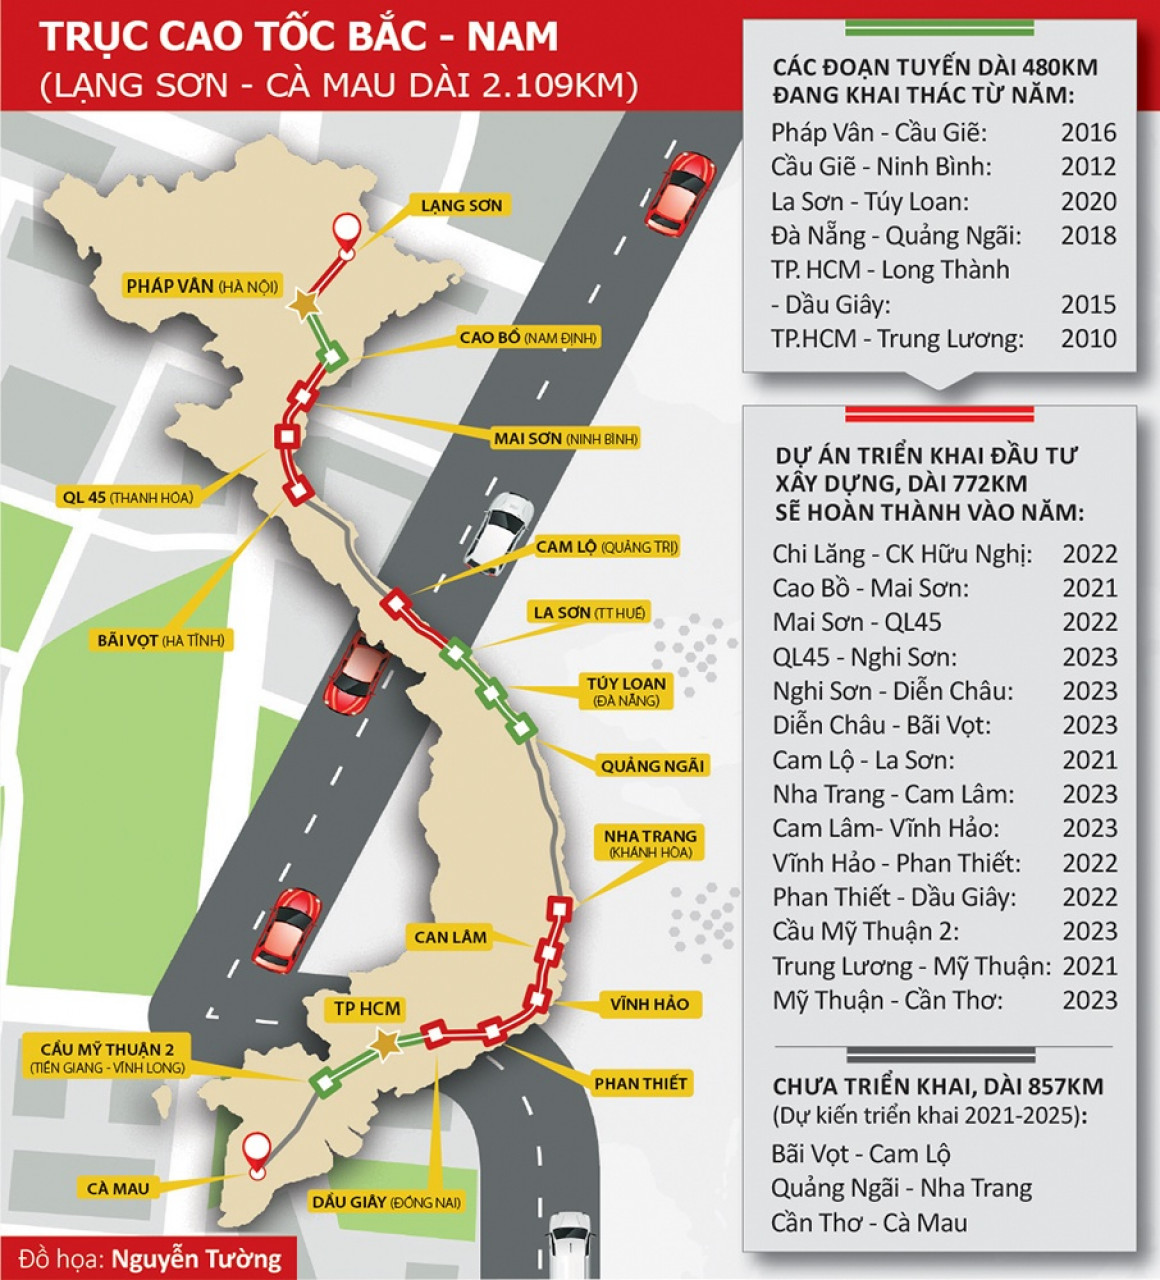 Tuyến đường cao tốc Bắc - Nam đã được hoàn thành vào cuối năm 2024, đây là một dự án kinh tế có quy mô lớn tại Việt Nam. Tuyến đường này kết nối các khu vực giữa Bắc và Nam việc giao thương sẽ trở nên thuận tiện hơn và kinh tế địa phương sẽ phát triển mạnh mẽ hơn.